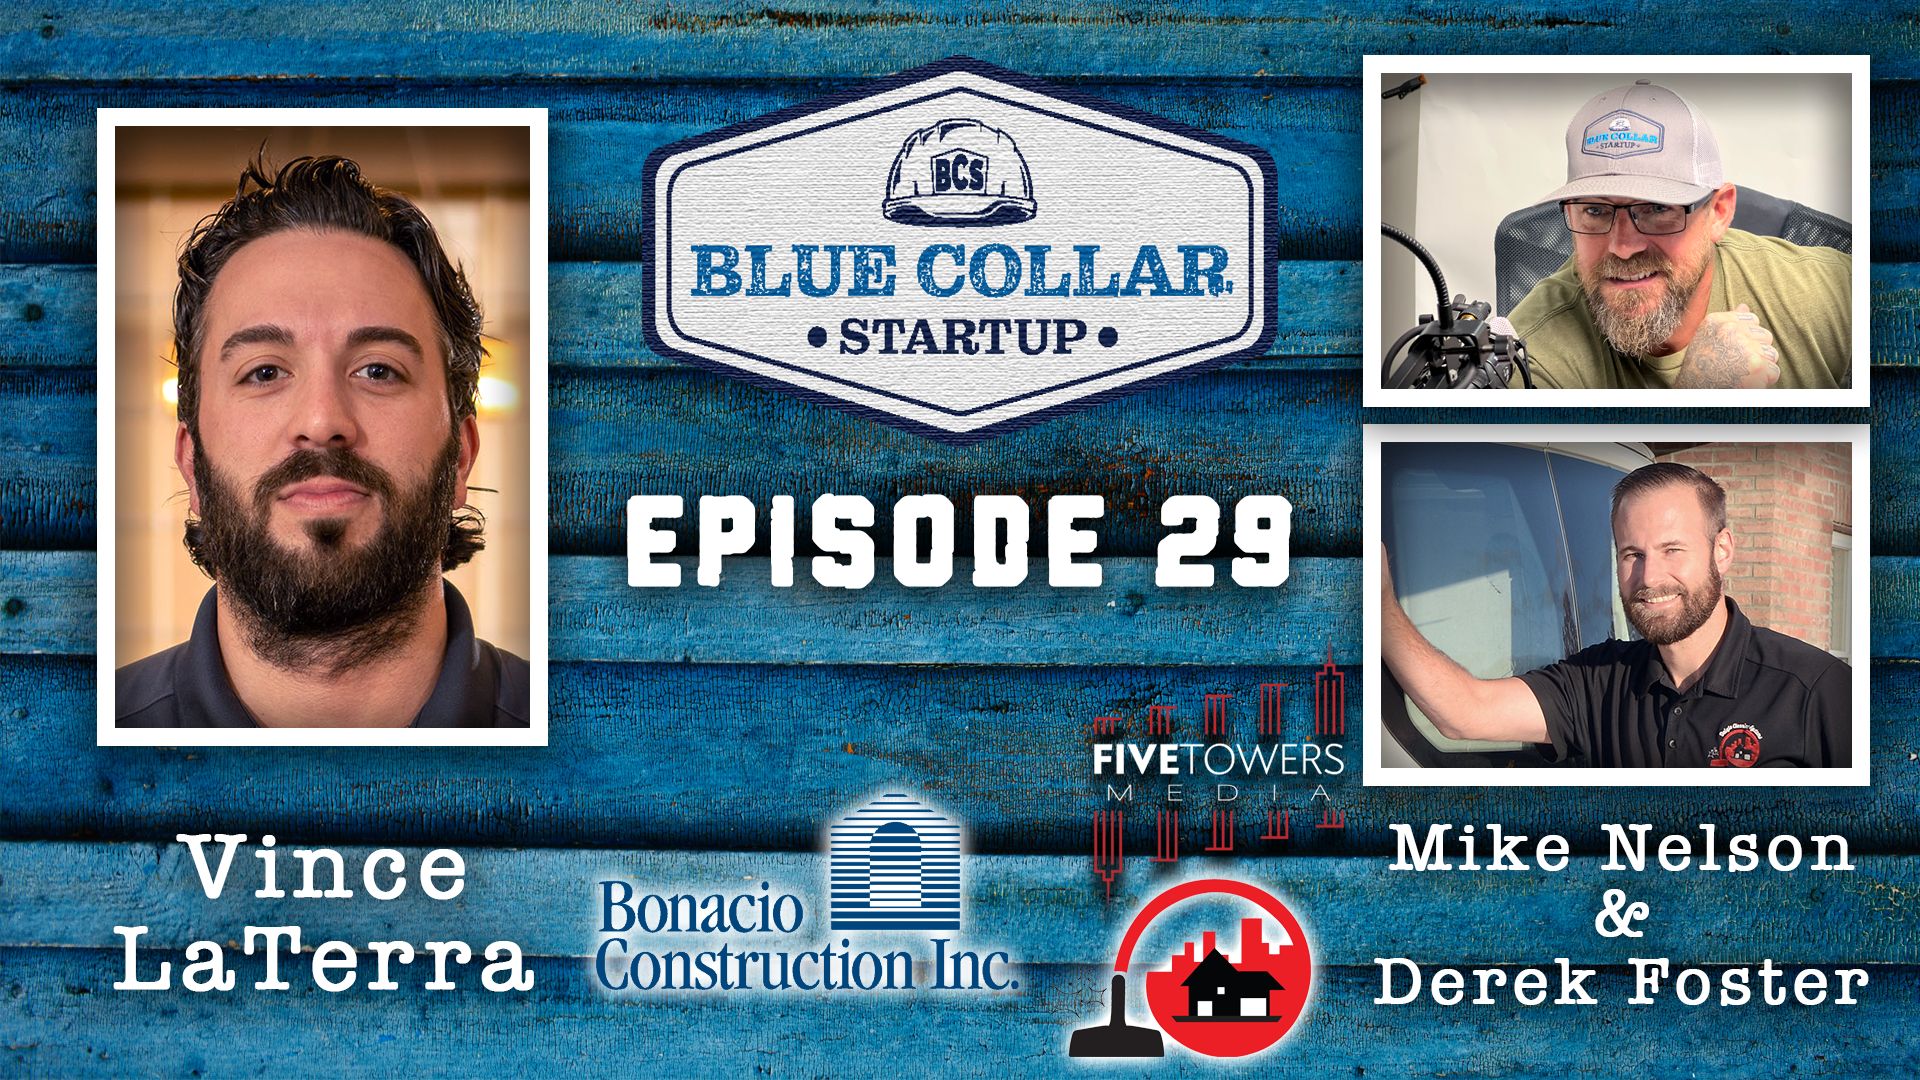 Episode 29: Vince LaTerra (Bonacio Construction Inc.)